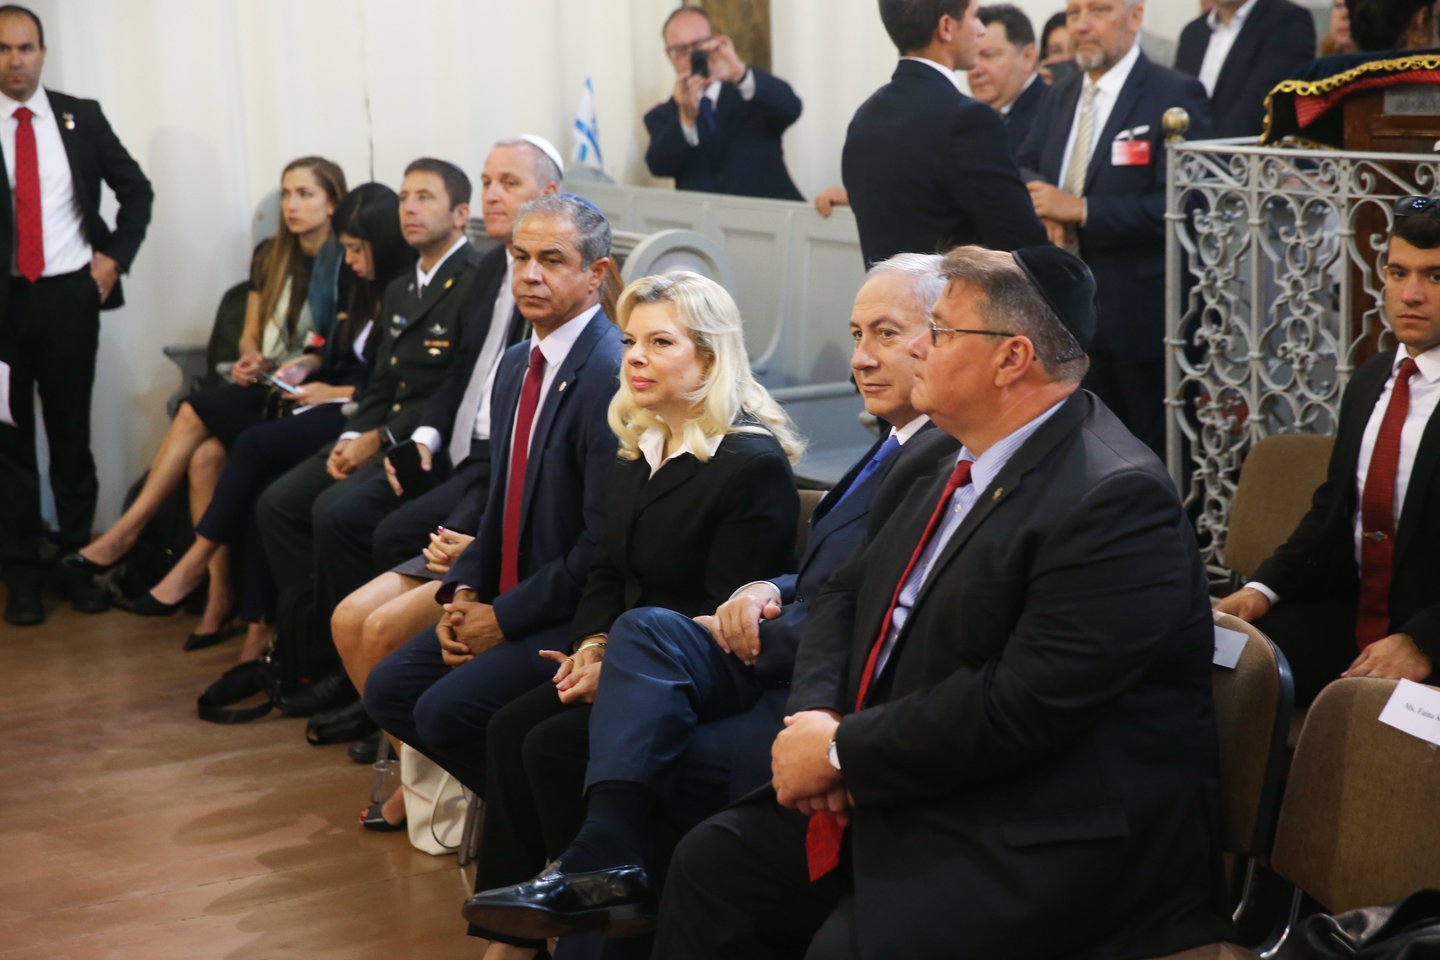 Į susitikimą su Izraelio ministru pirmininku B. Netanyahu atvyko apie 300 žmonių, teigė Lietuvos žydų bendruomenės pirmininkė Faina Kukliansky.<br> R.Danisevičiaus nuotr.